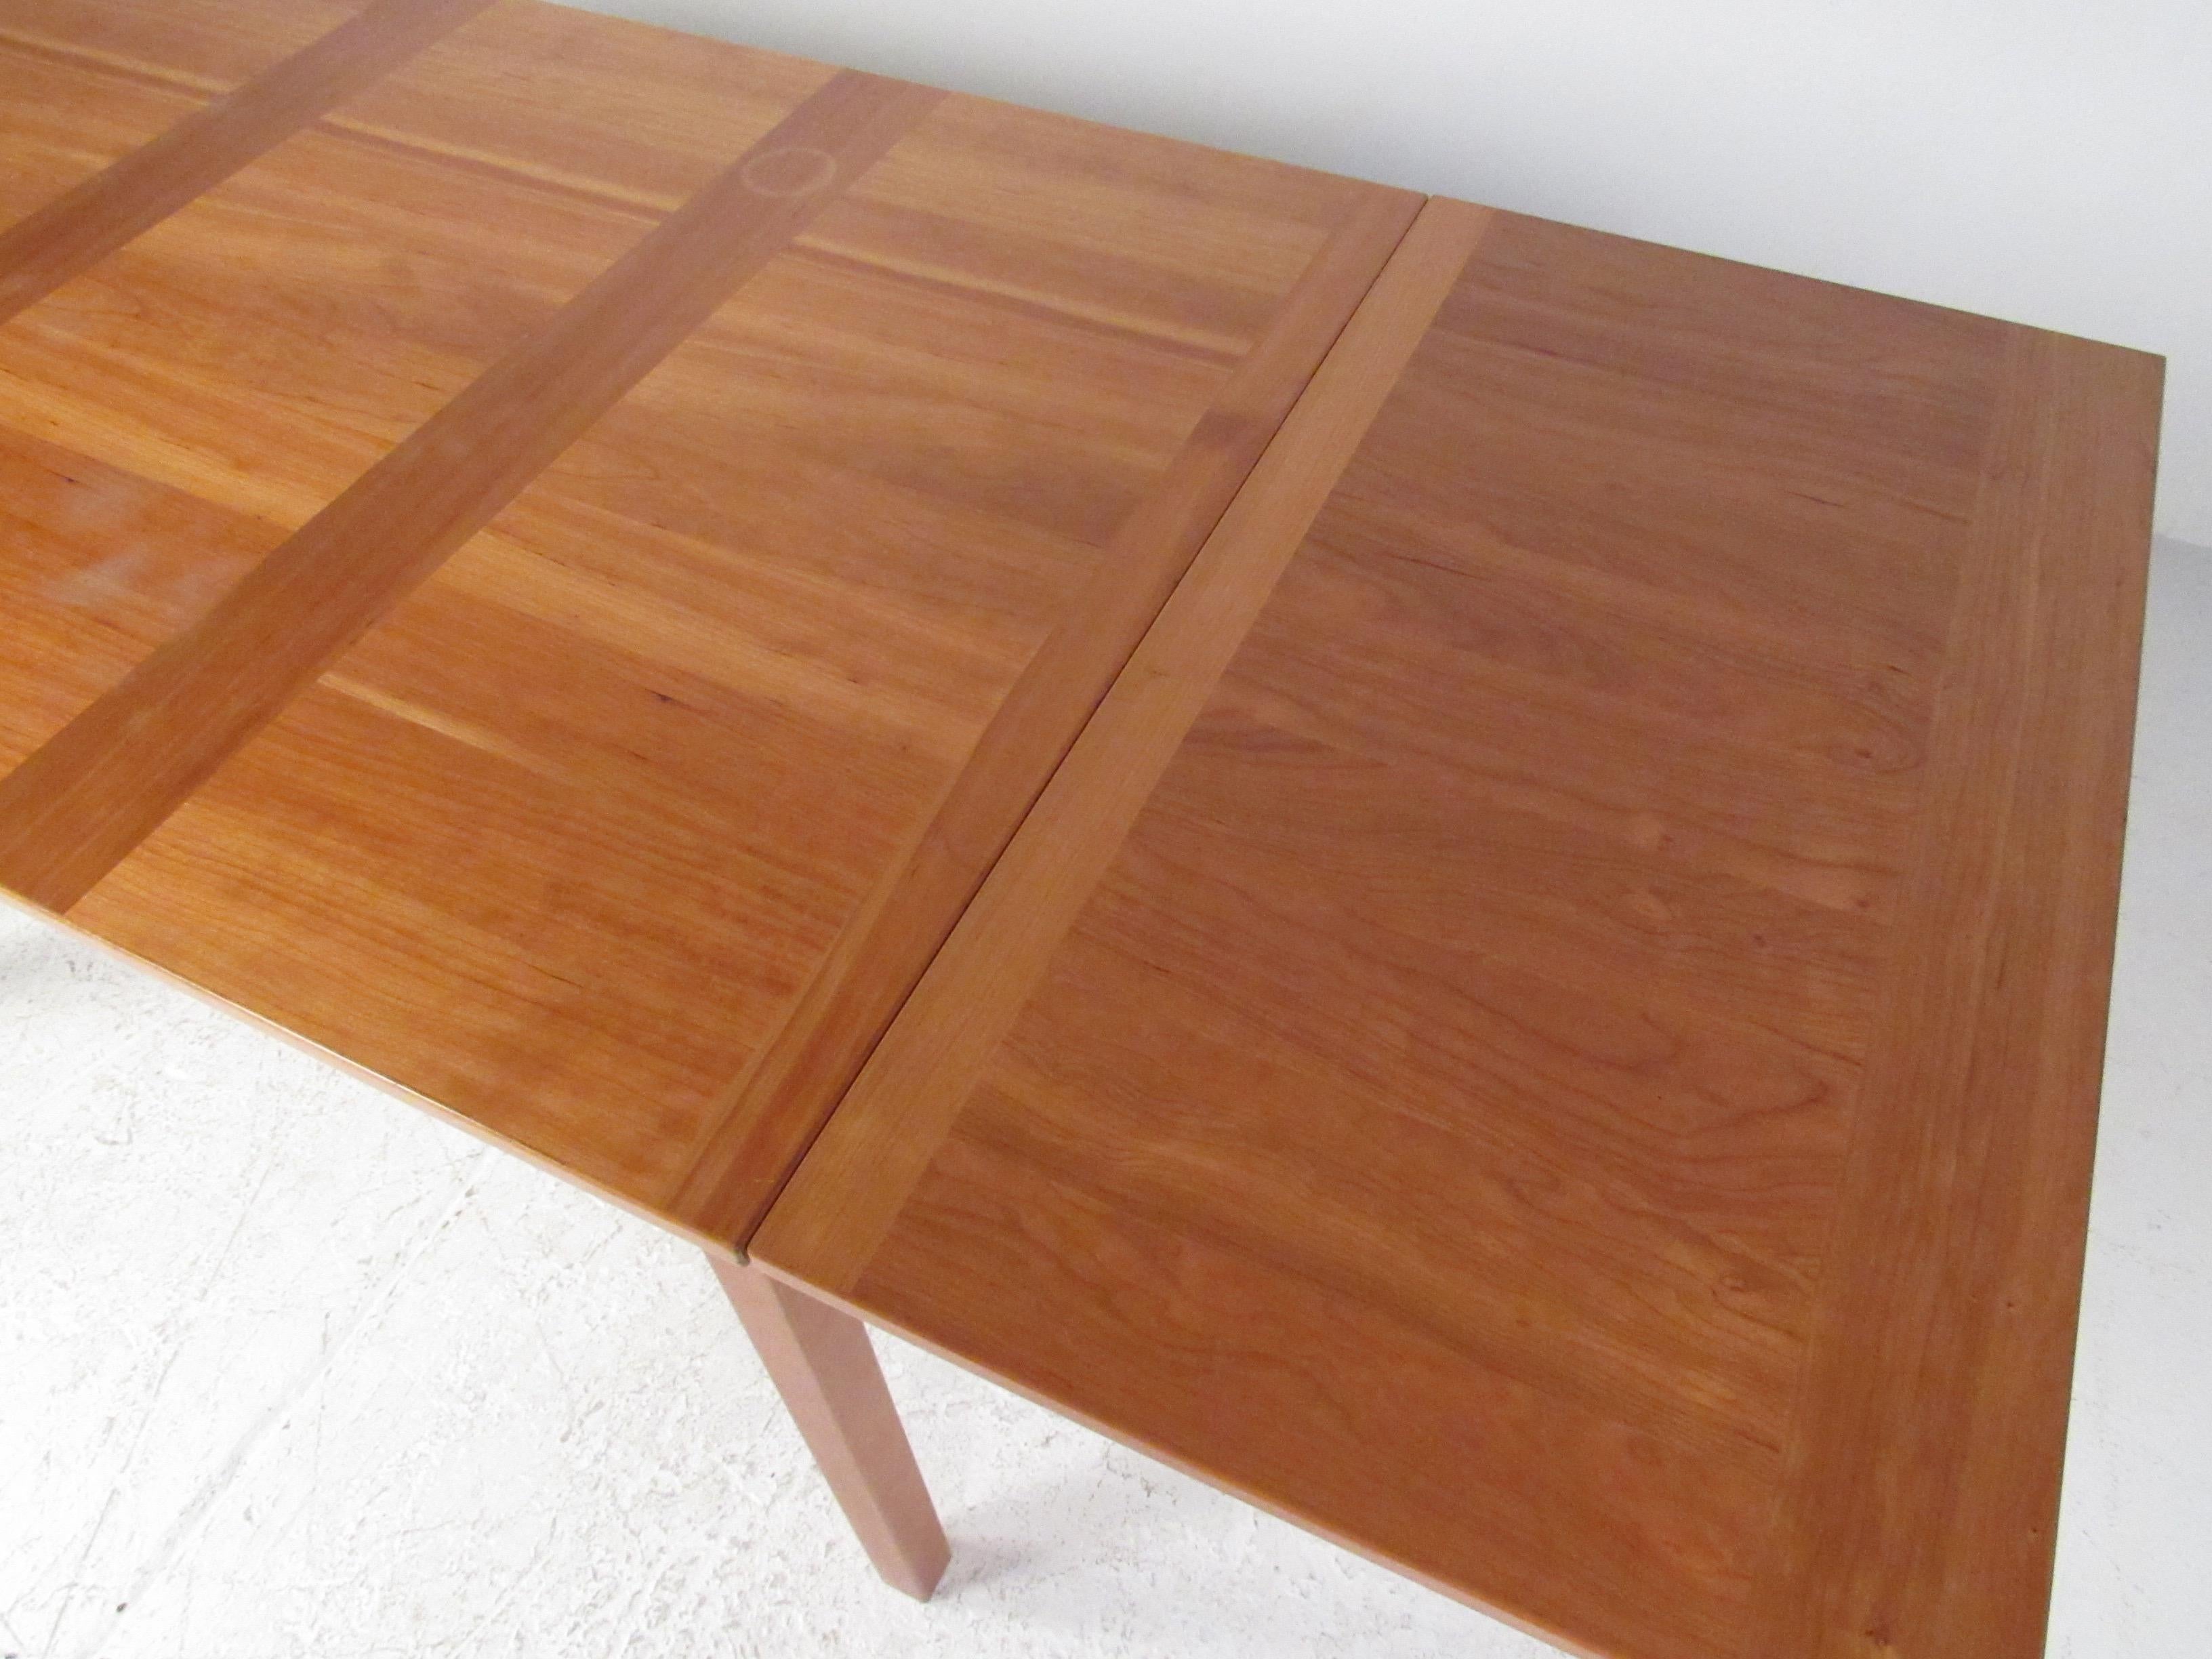 Danish Vejle Stole Designed Extending Draw-Leaf Dining Table For Sale